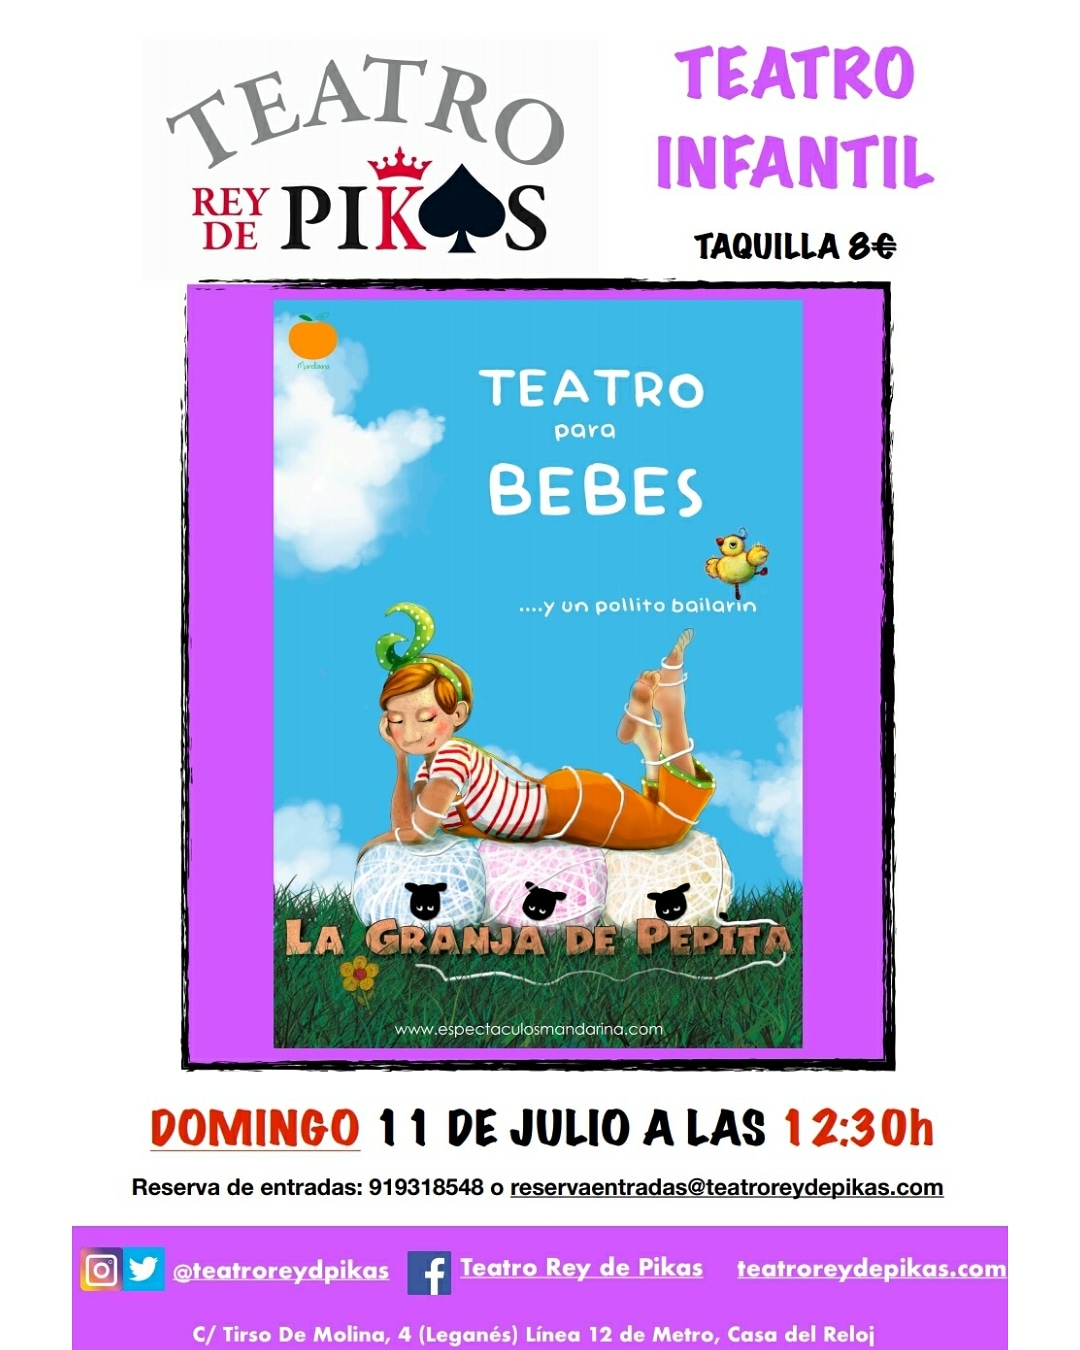 Teatro infantil LA GRANJA DE PEPITA en Teatro Rey de Pikas